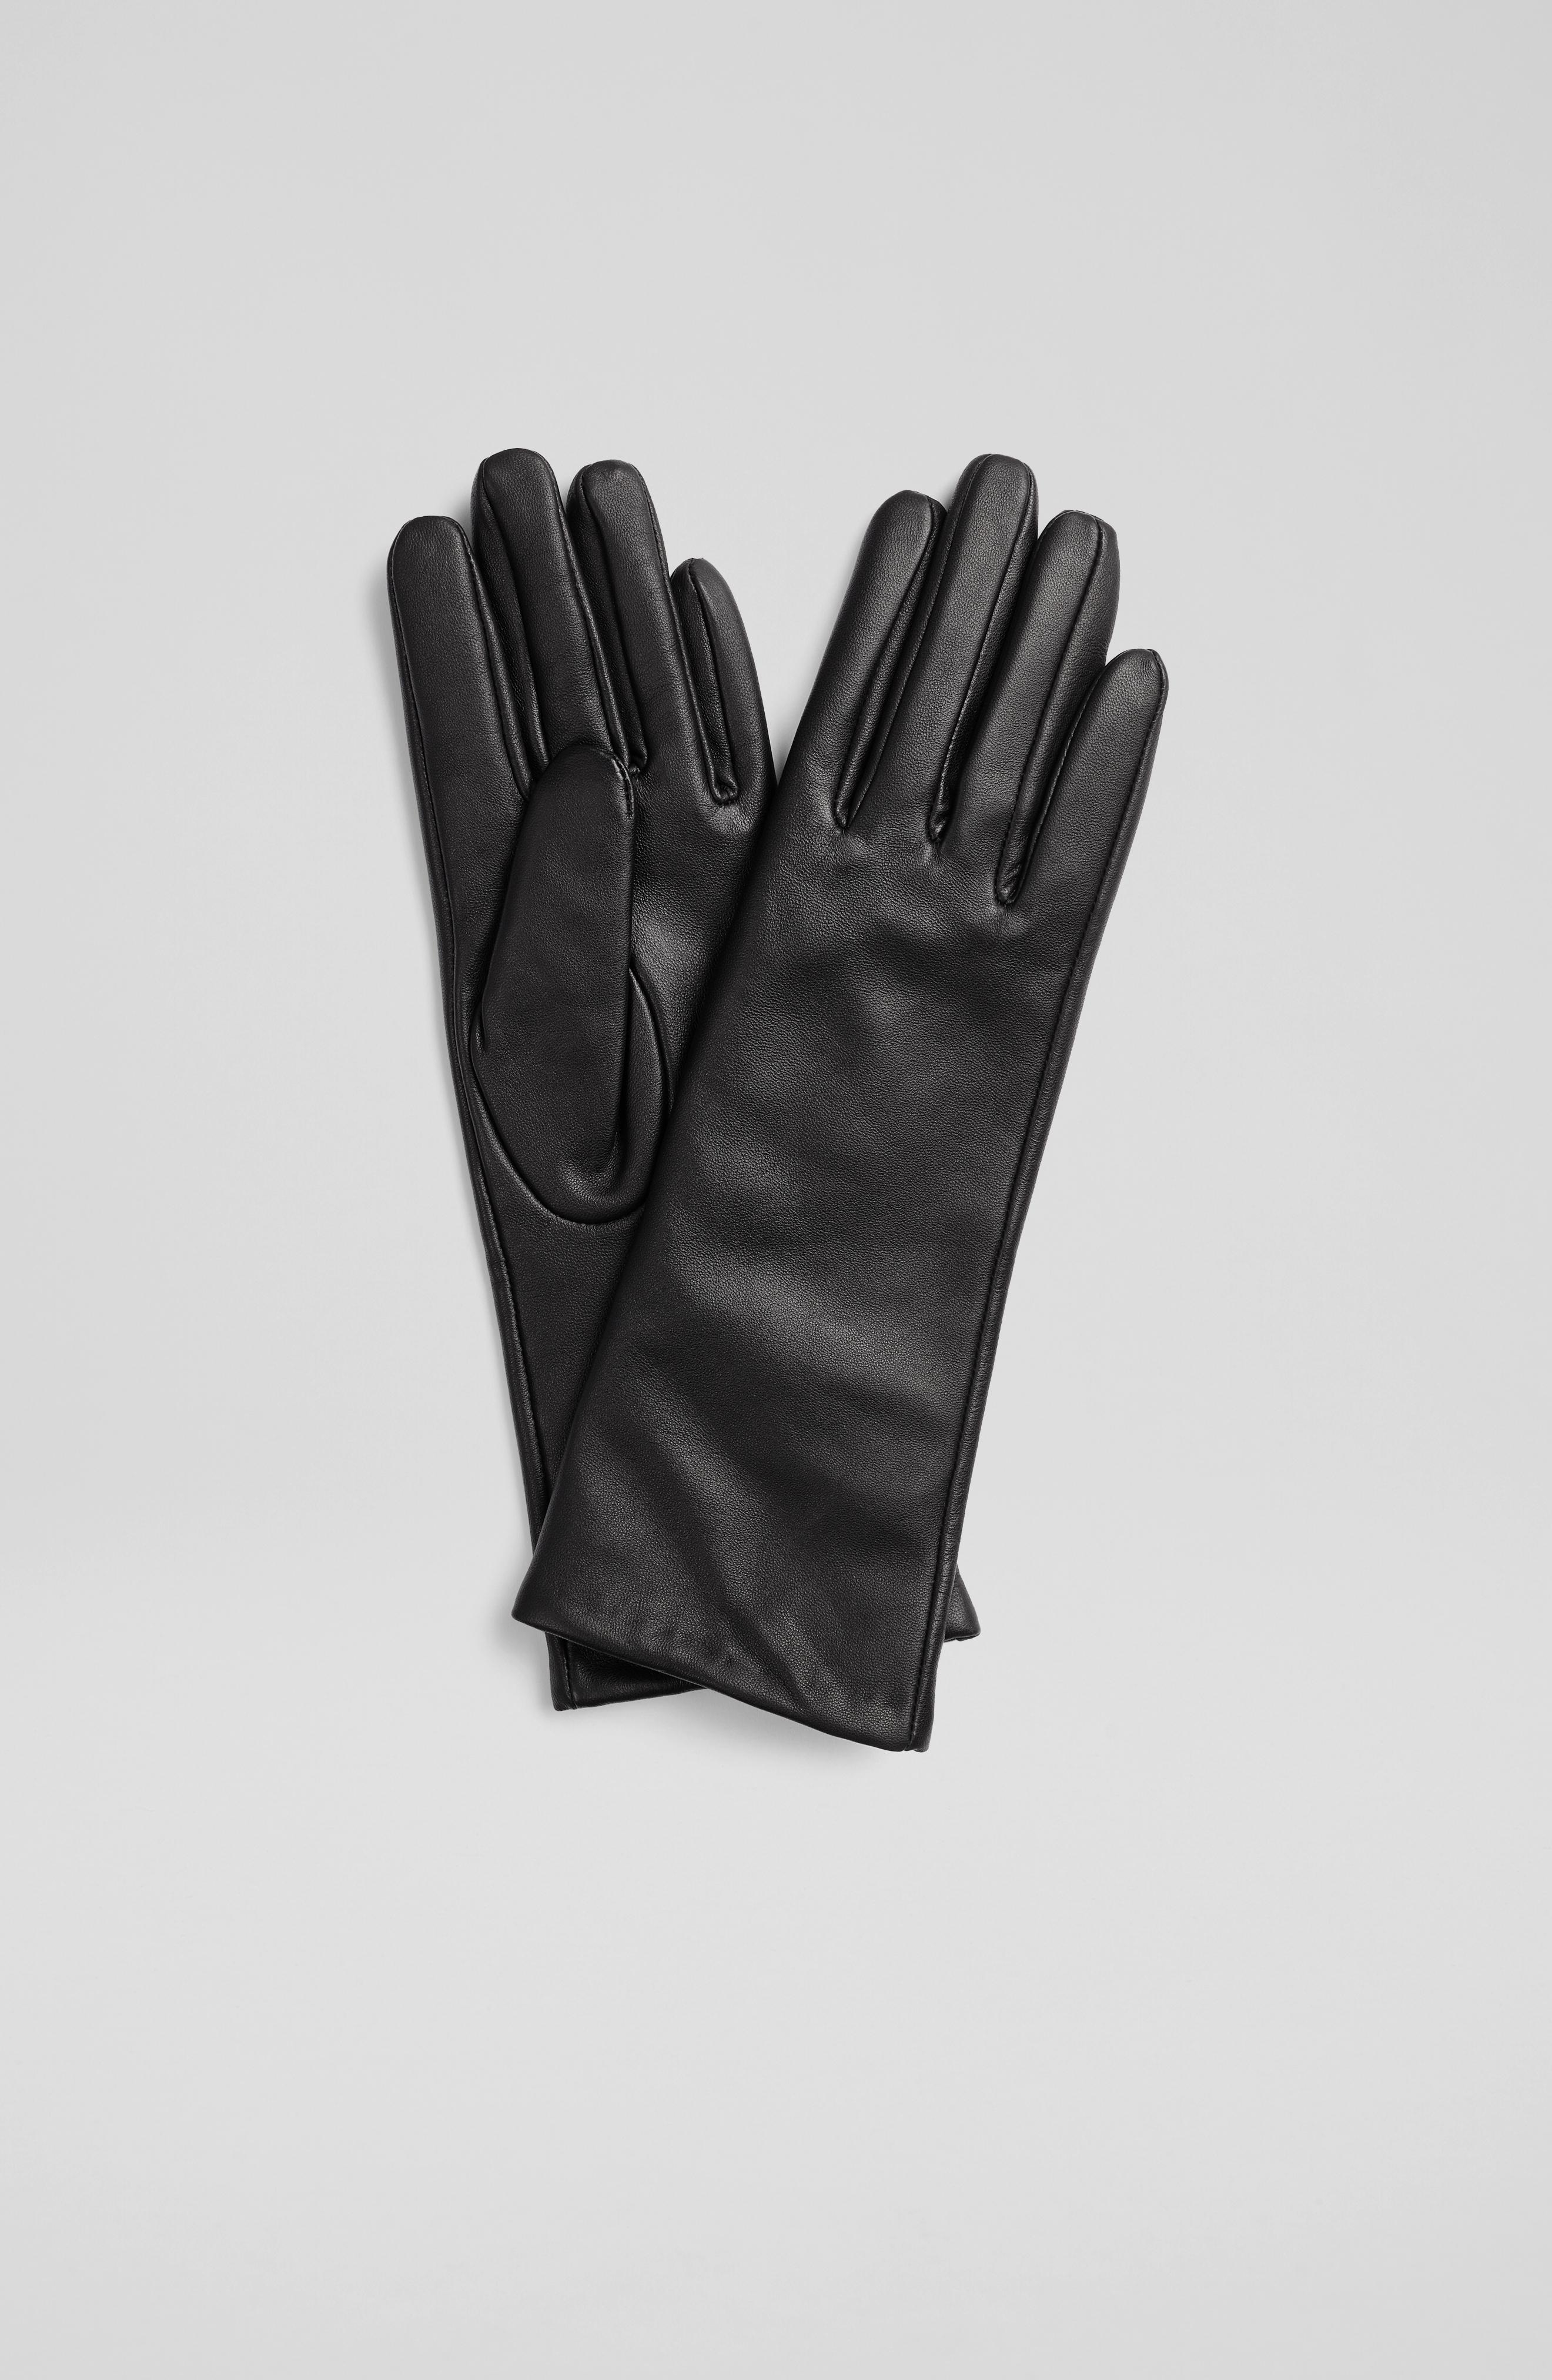 L.K.Bennett Kimberley Black Leather Long Gloves, Black